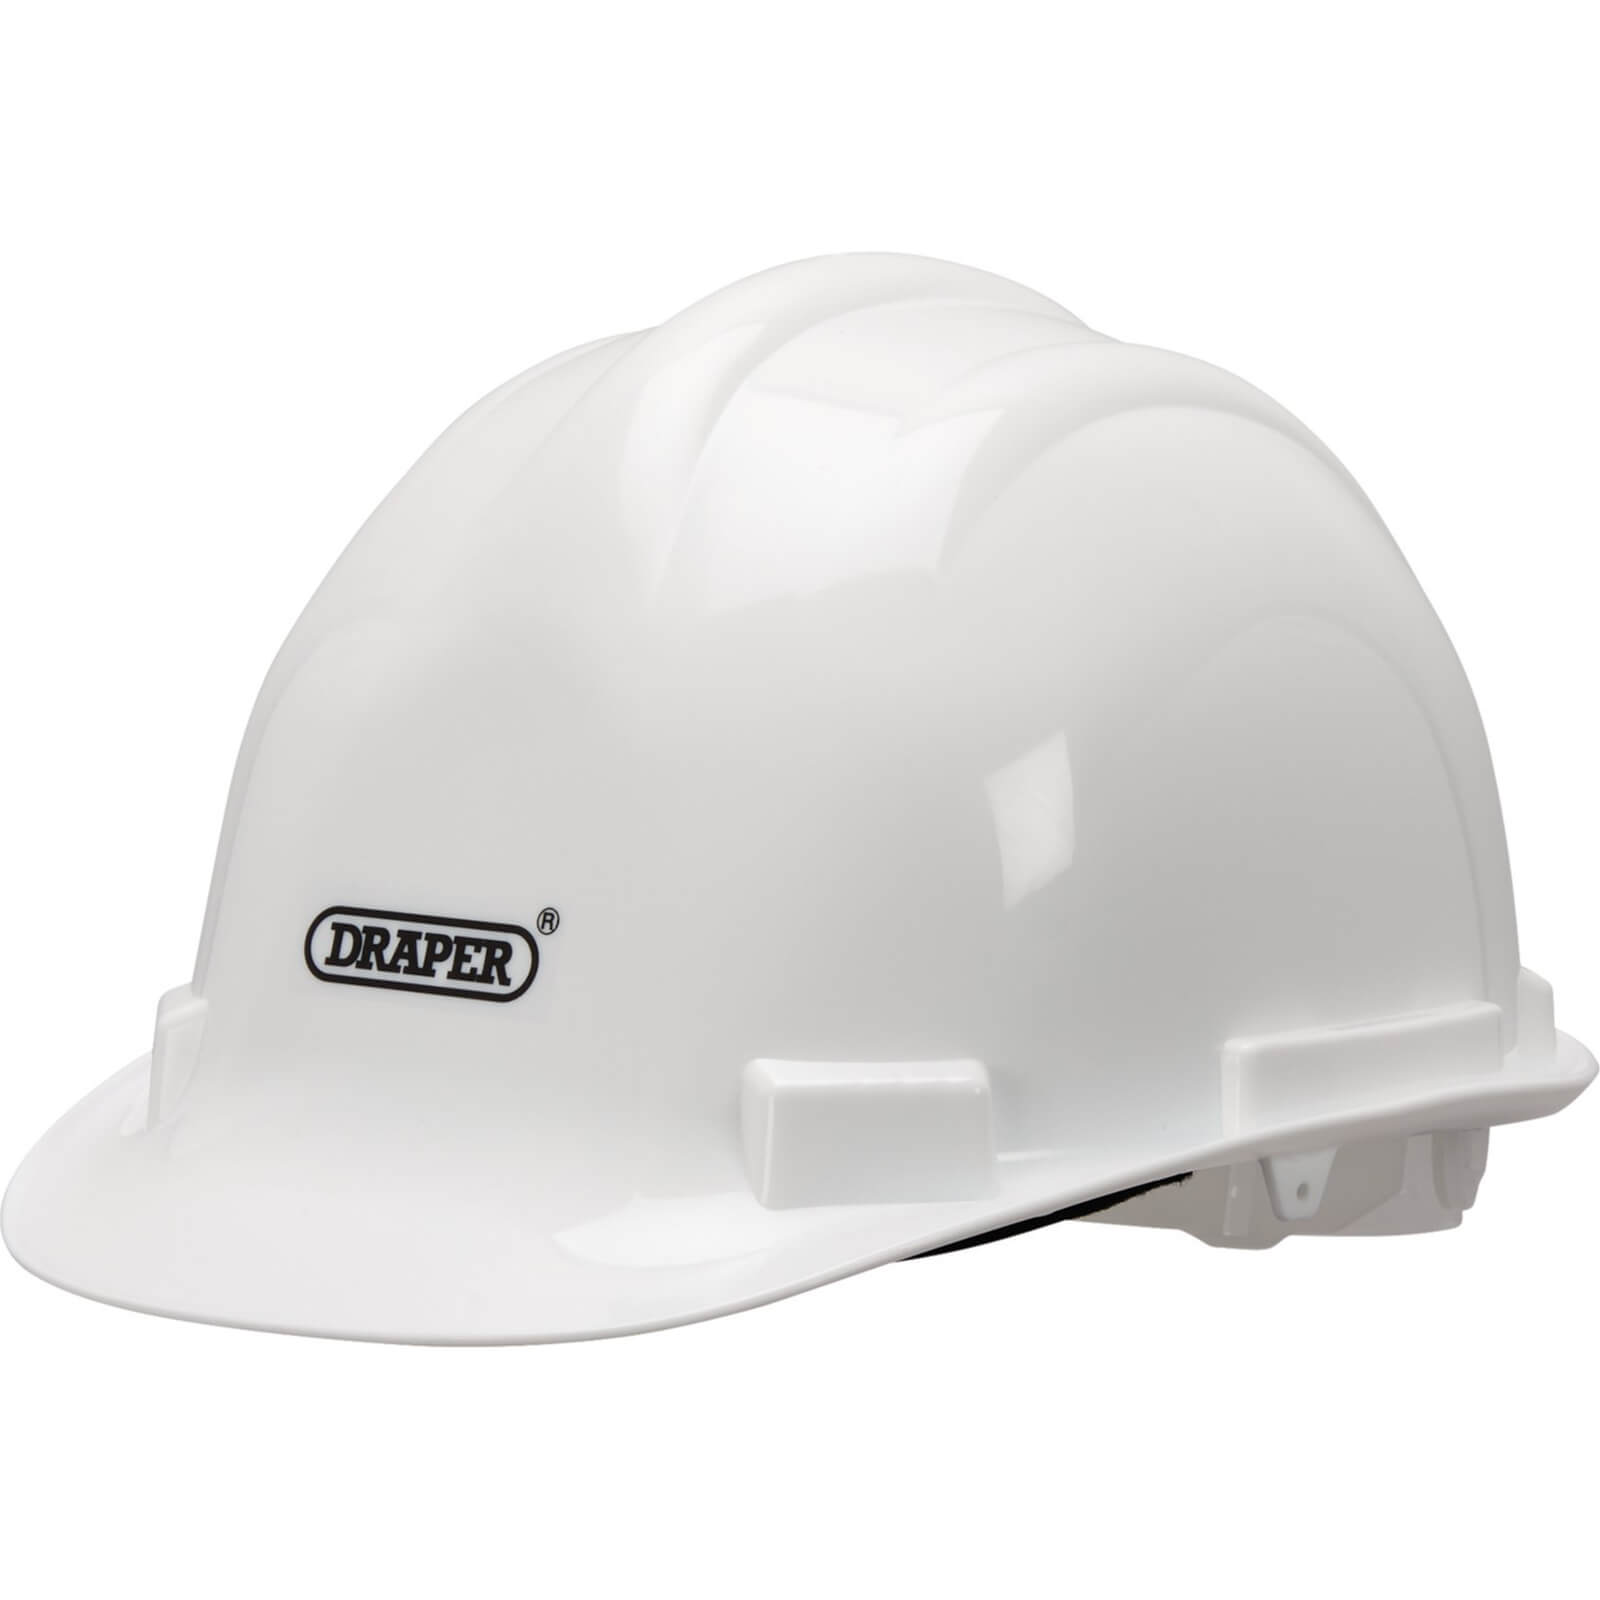 Image of Draper EN397 Hard Hat Safety Helmet White